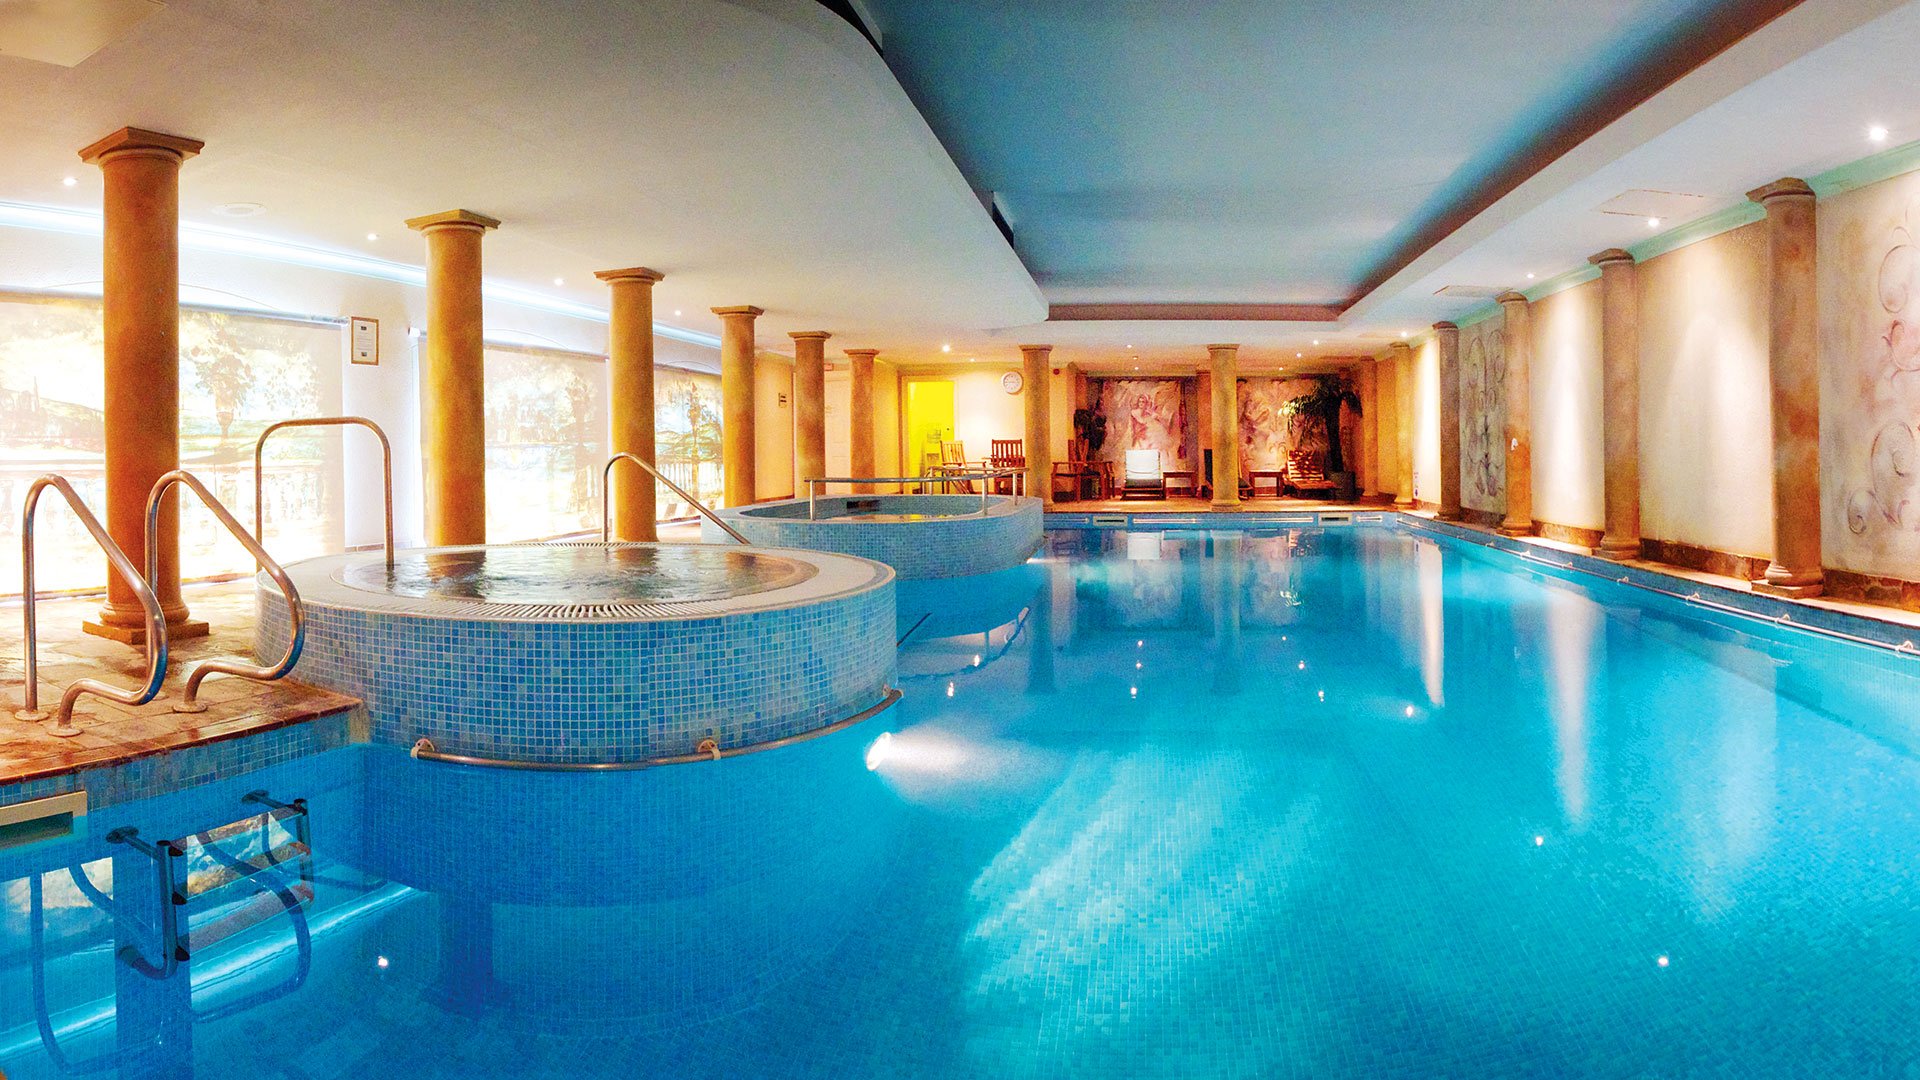 Swimming pool at Nailcote Hall Hotel